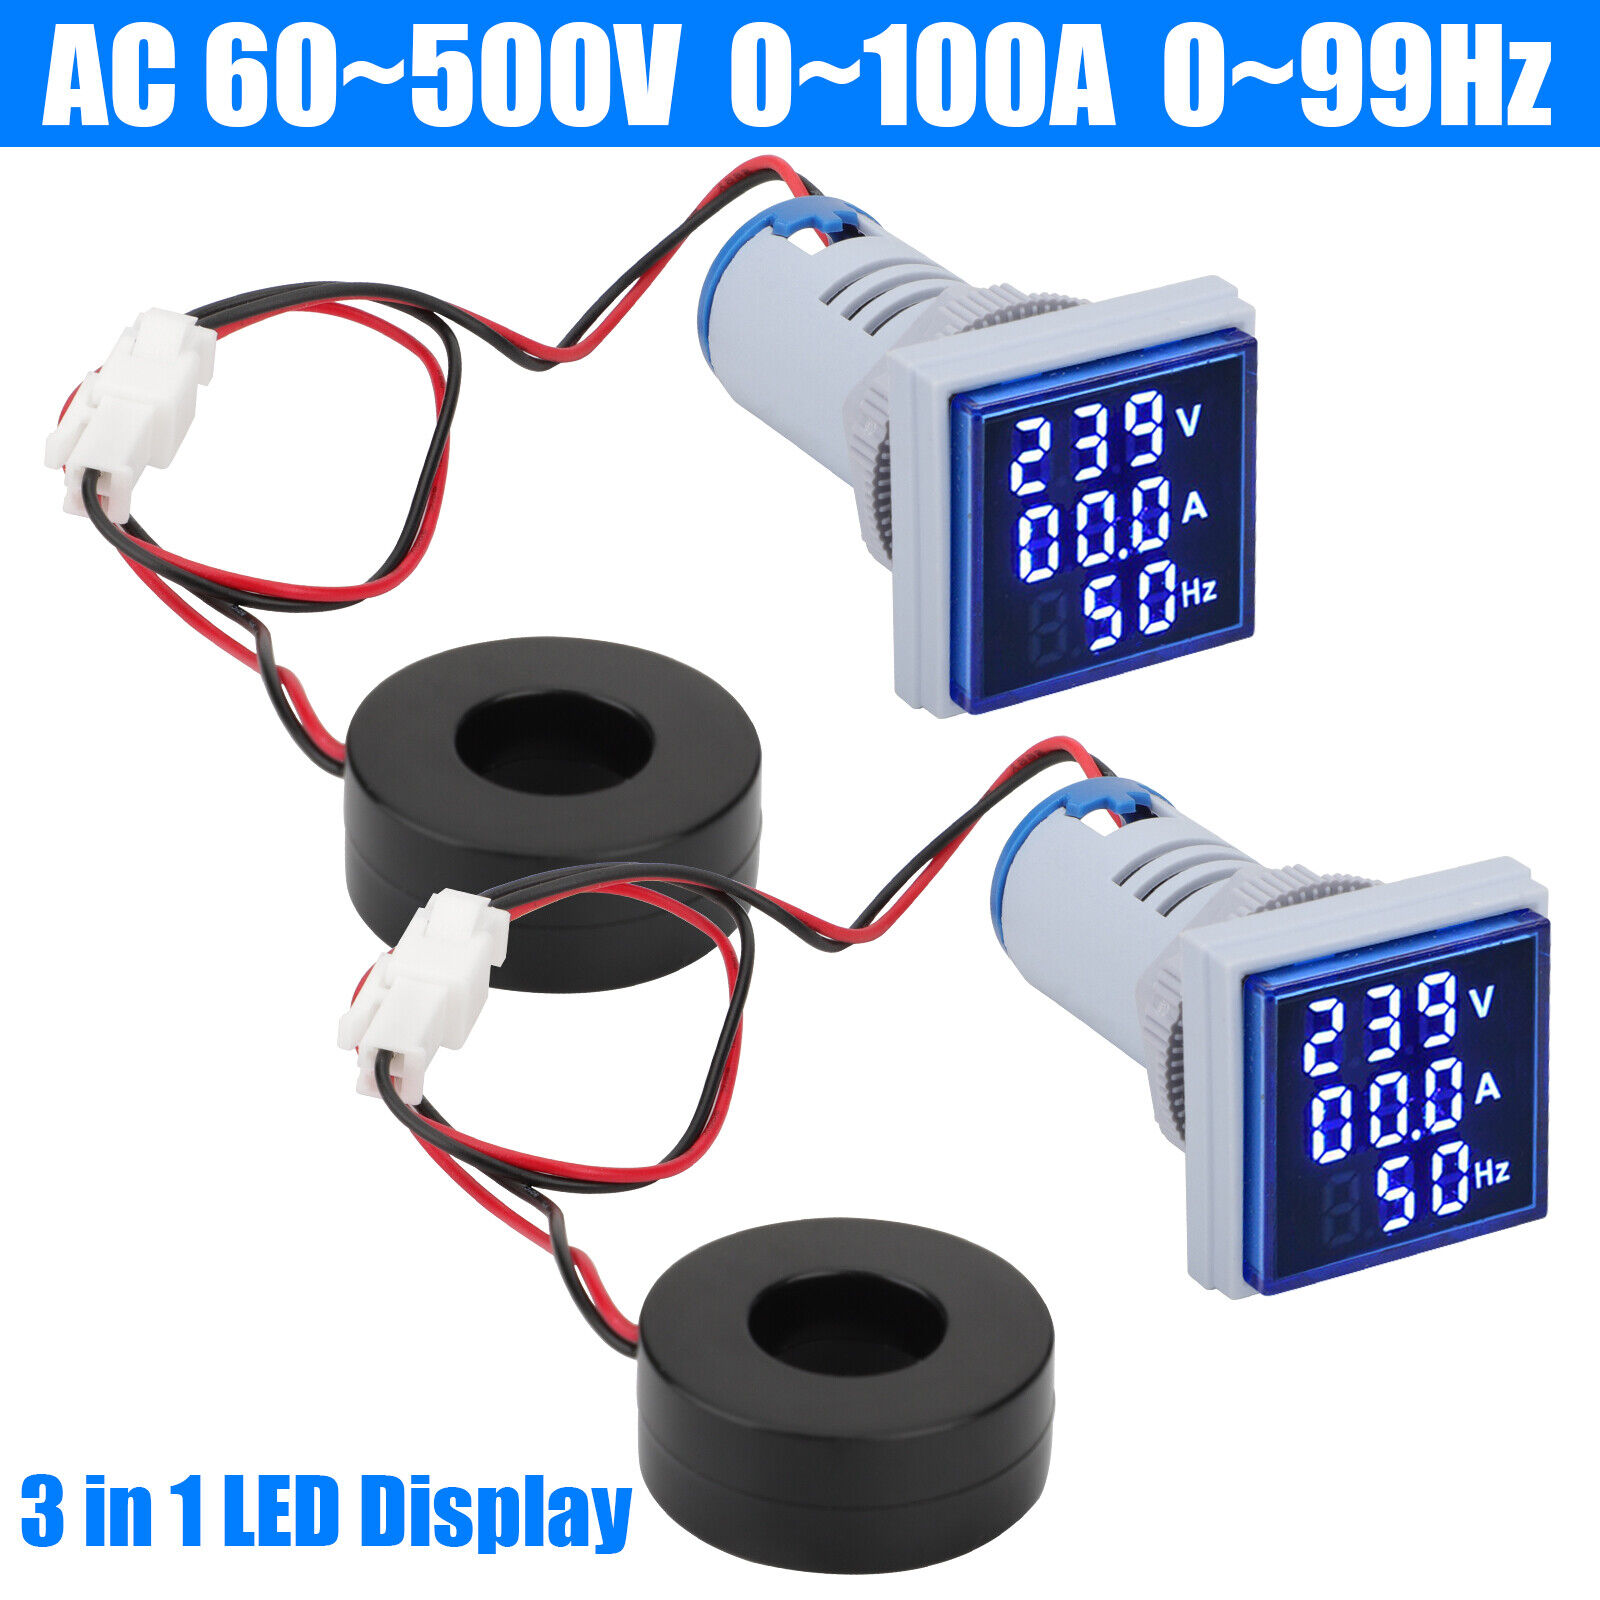 2x AC 60-500V 0-100A 22mm 3 in 1 Voltmeter Ammeter LED Digital Volt/AMP Meter